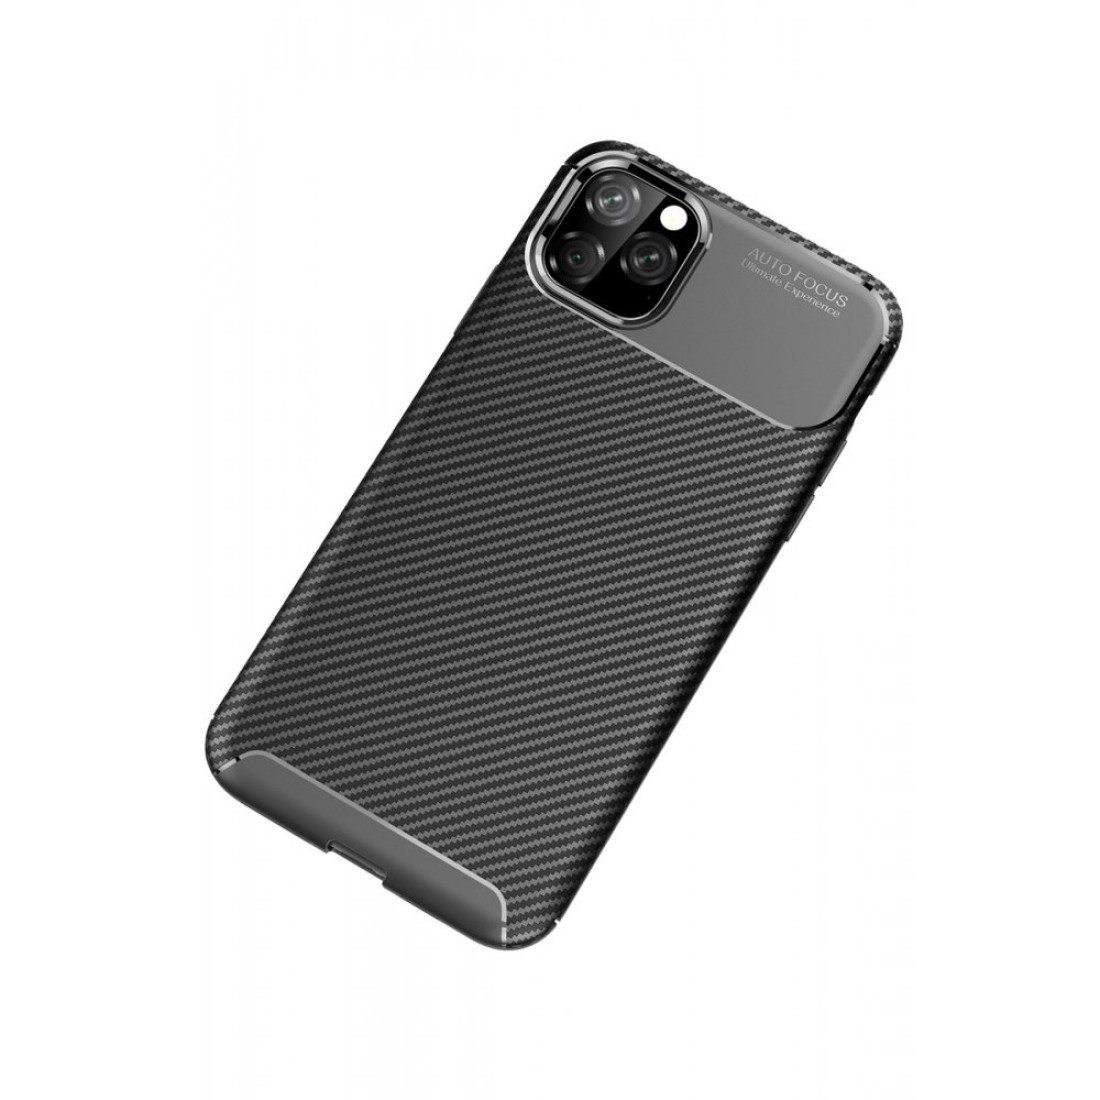 Apple iPhone 11 Pro Max Kılıf Focus Karbon Silikon - Siyah